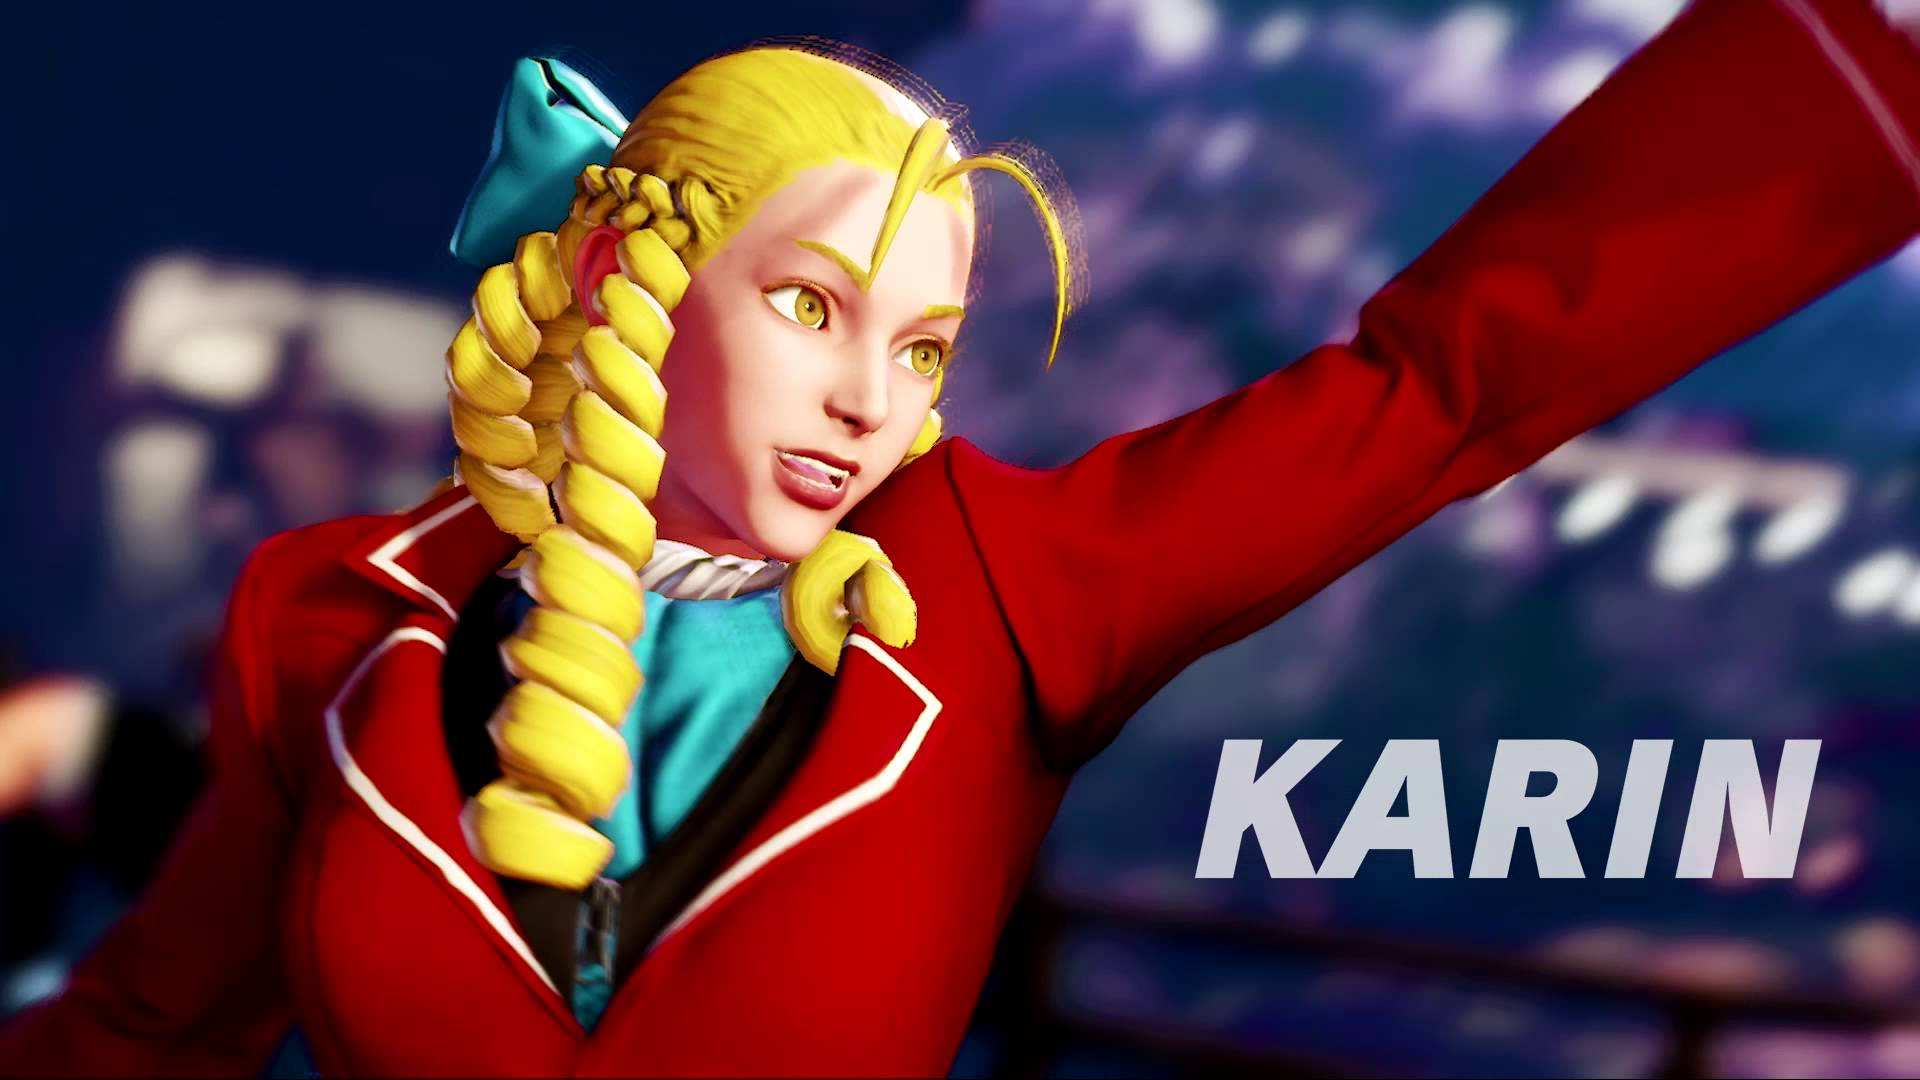 Street Fighter V: Karin announcement trailer